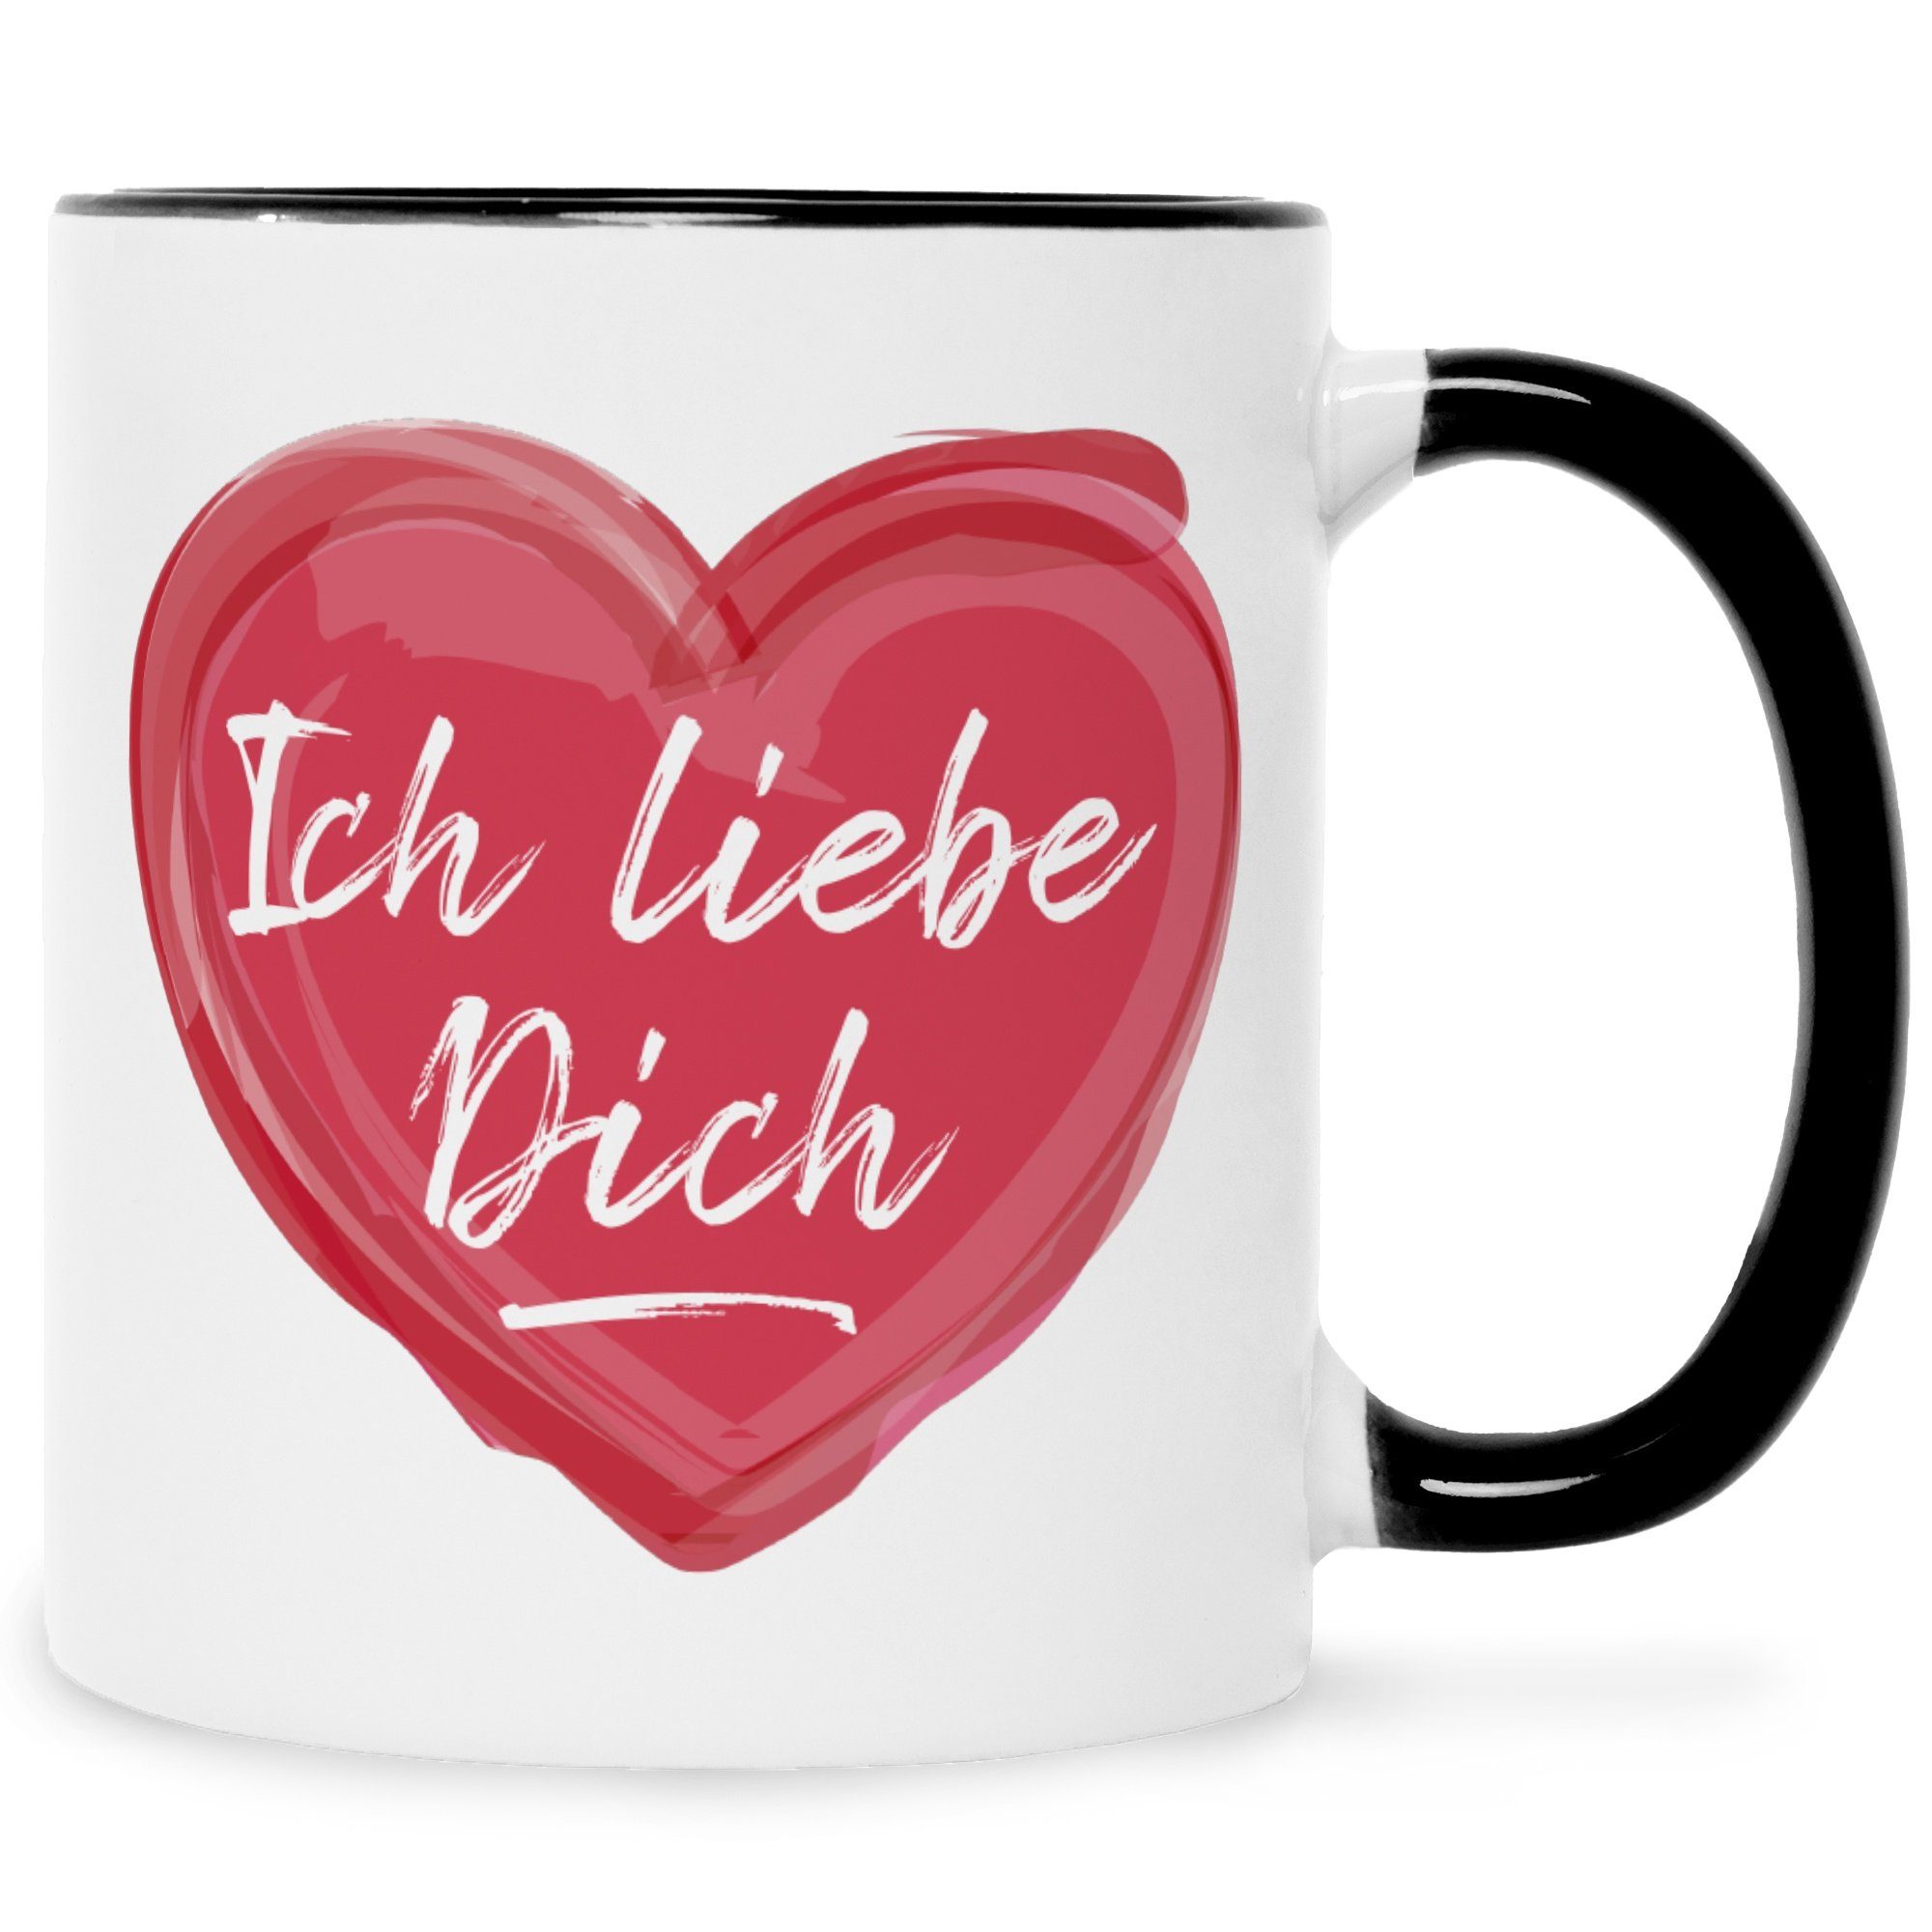 GRAVURZEILE Tasse Bedruckte Tasse mit Spruch - Ich liebe dich, Geschenke für Sie & Ihn zum Valentinstag - Geschenk für Pärchen Schwarz Weiß